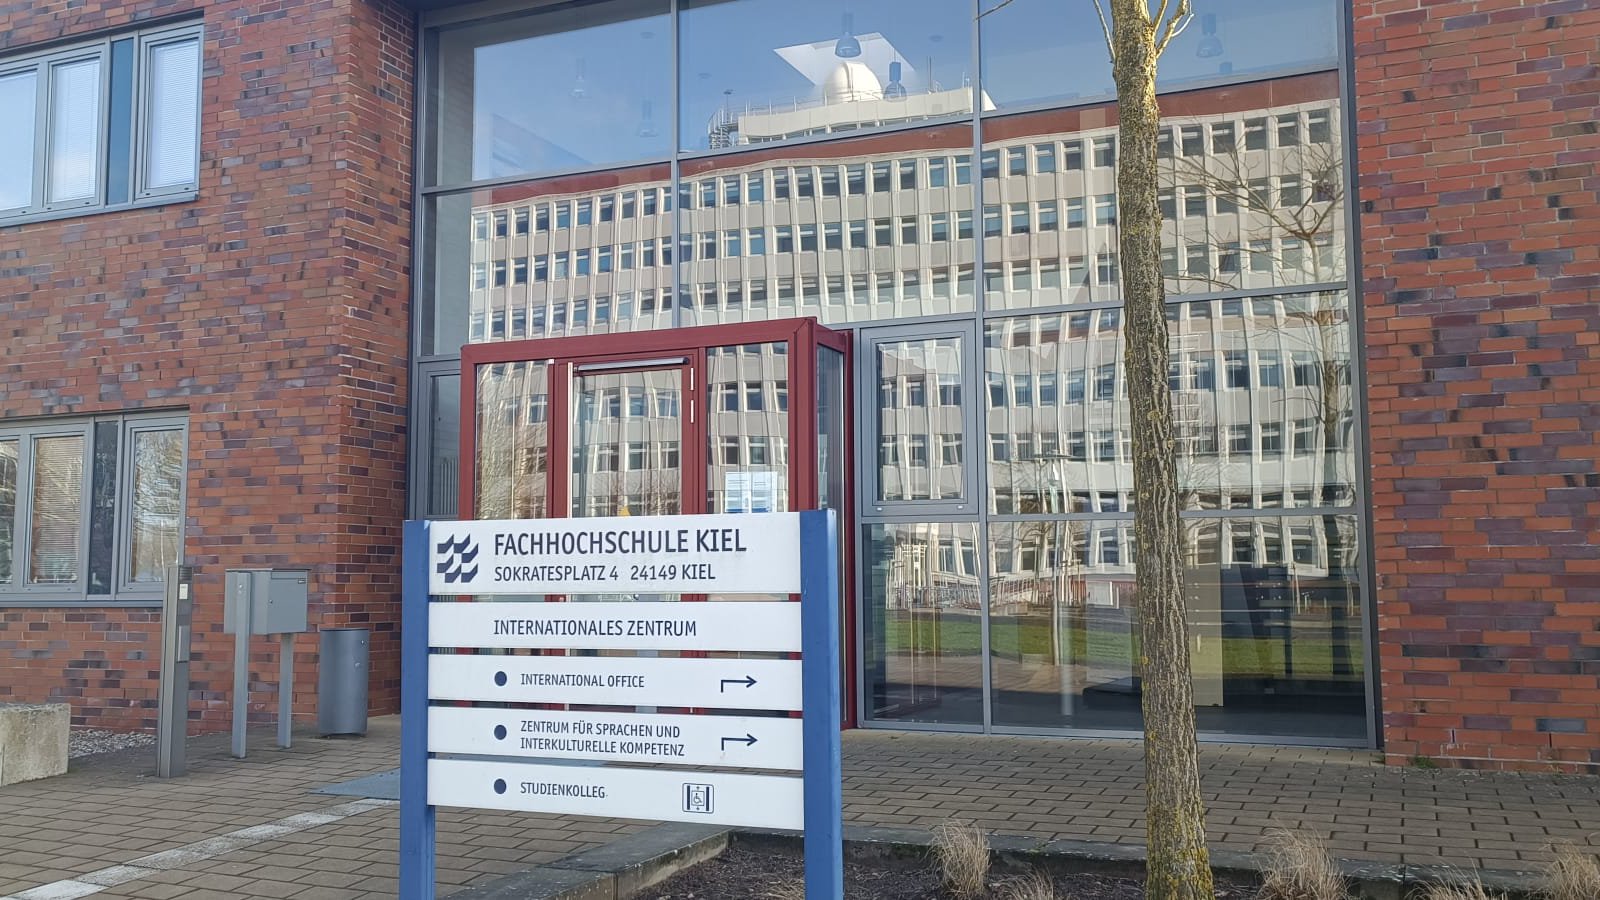 Ein rotbrauner Backstein-Bau mit großer Glasfassade, in welcher sich ein großes Gebäude spiegelt. Im Vordergrund steht ein Schild, welches das International Office ausweist.